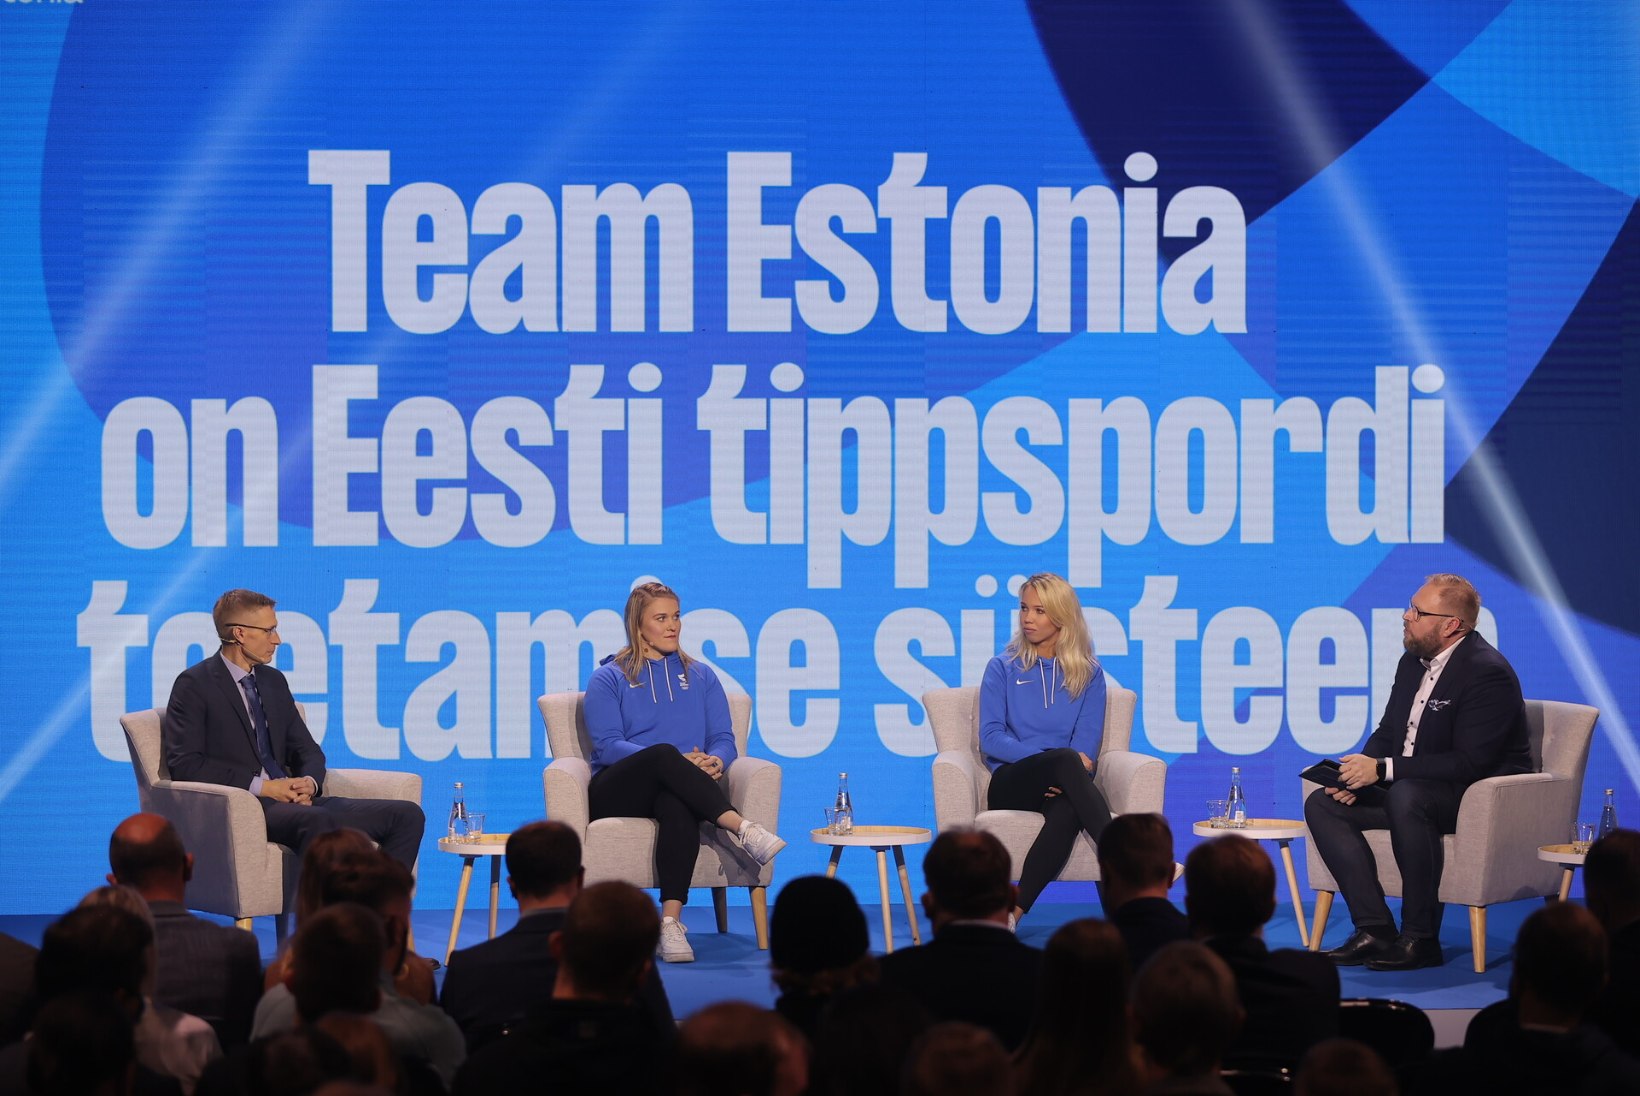 GALERII | Kohal terve Eesti spordiladvik! EOK esitles Kultuurikatlas Team Estoniat